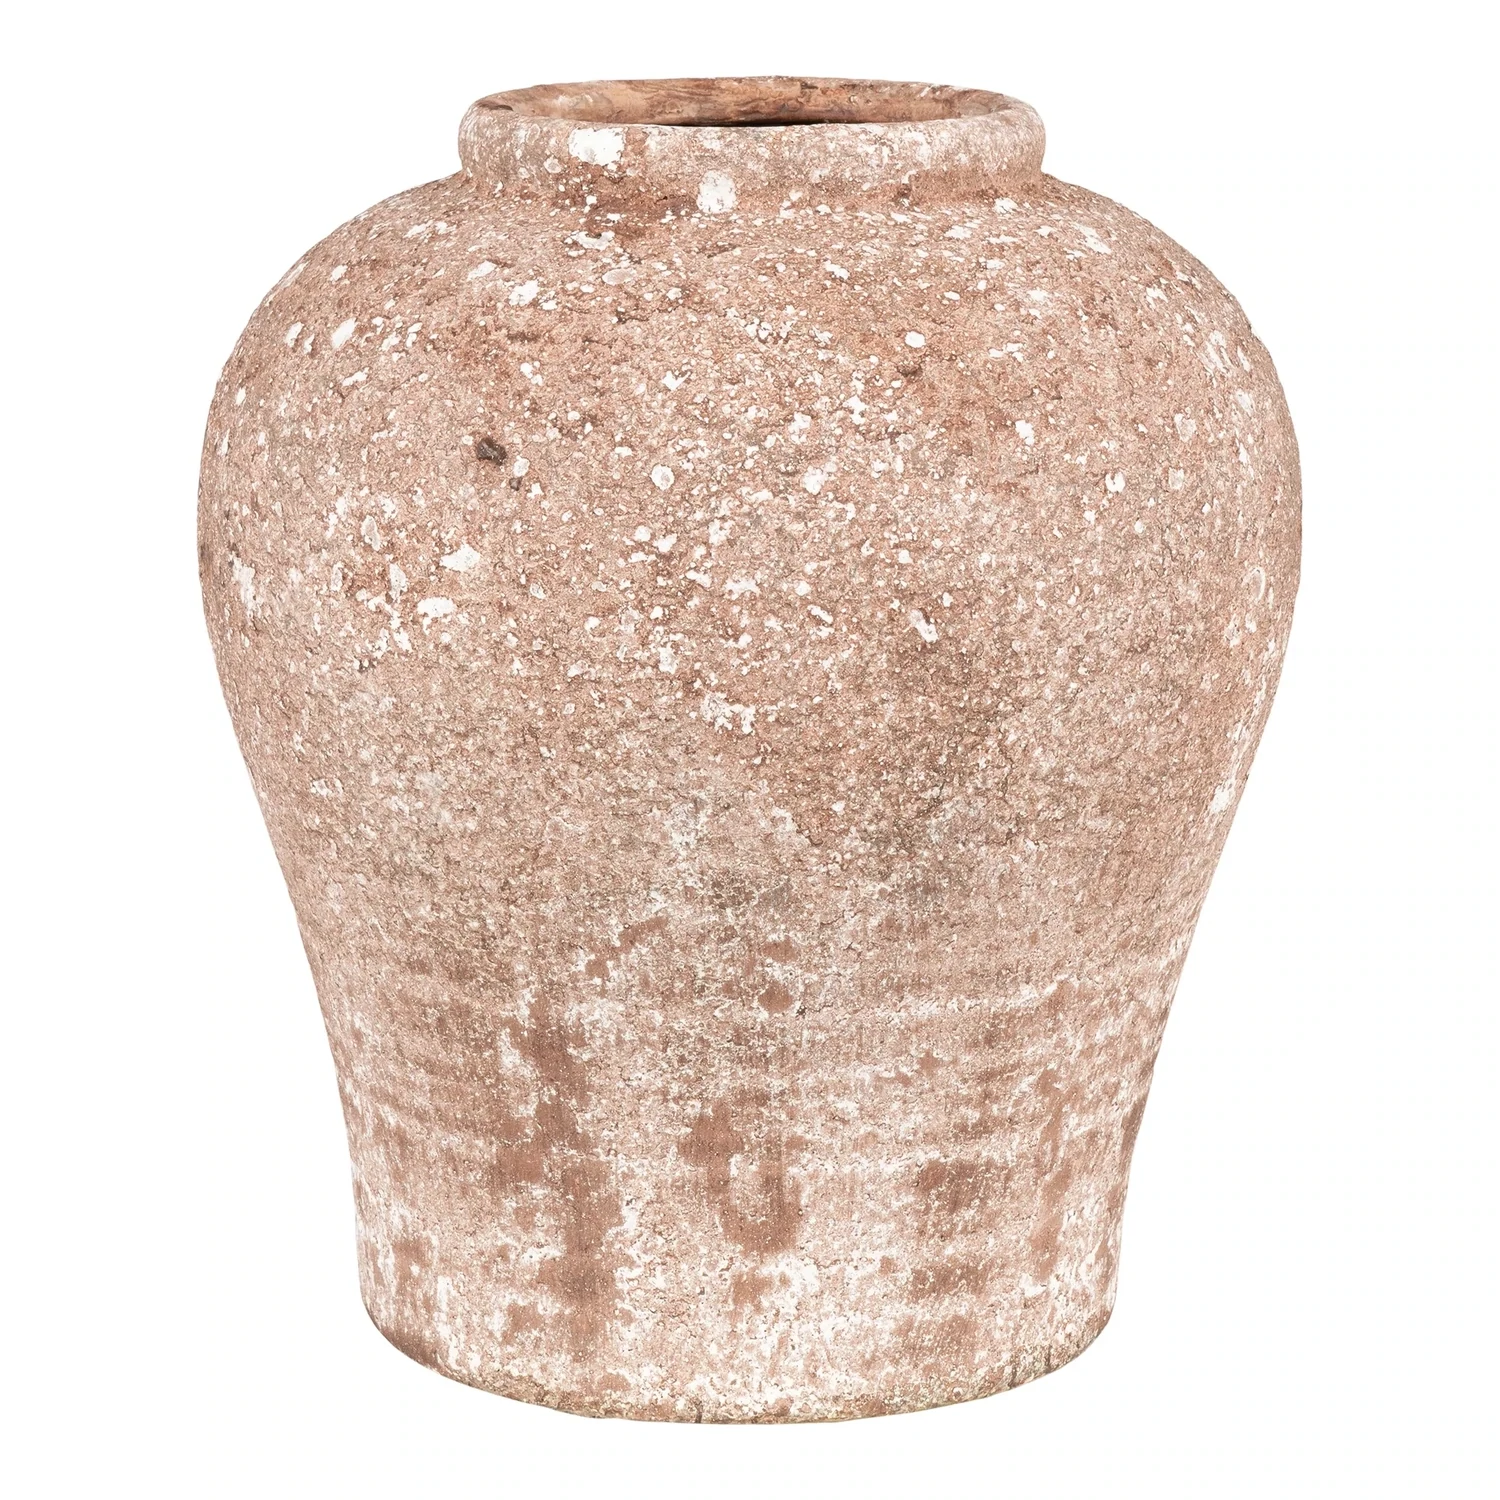 Keramikas puķu pods senlaicīga rustic izskata, brūnā un bēšā krāsā.